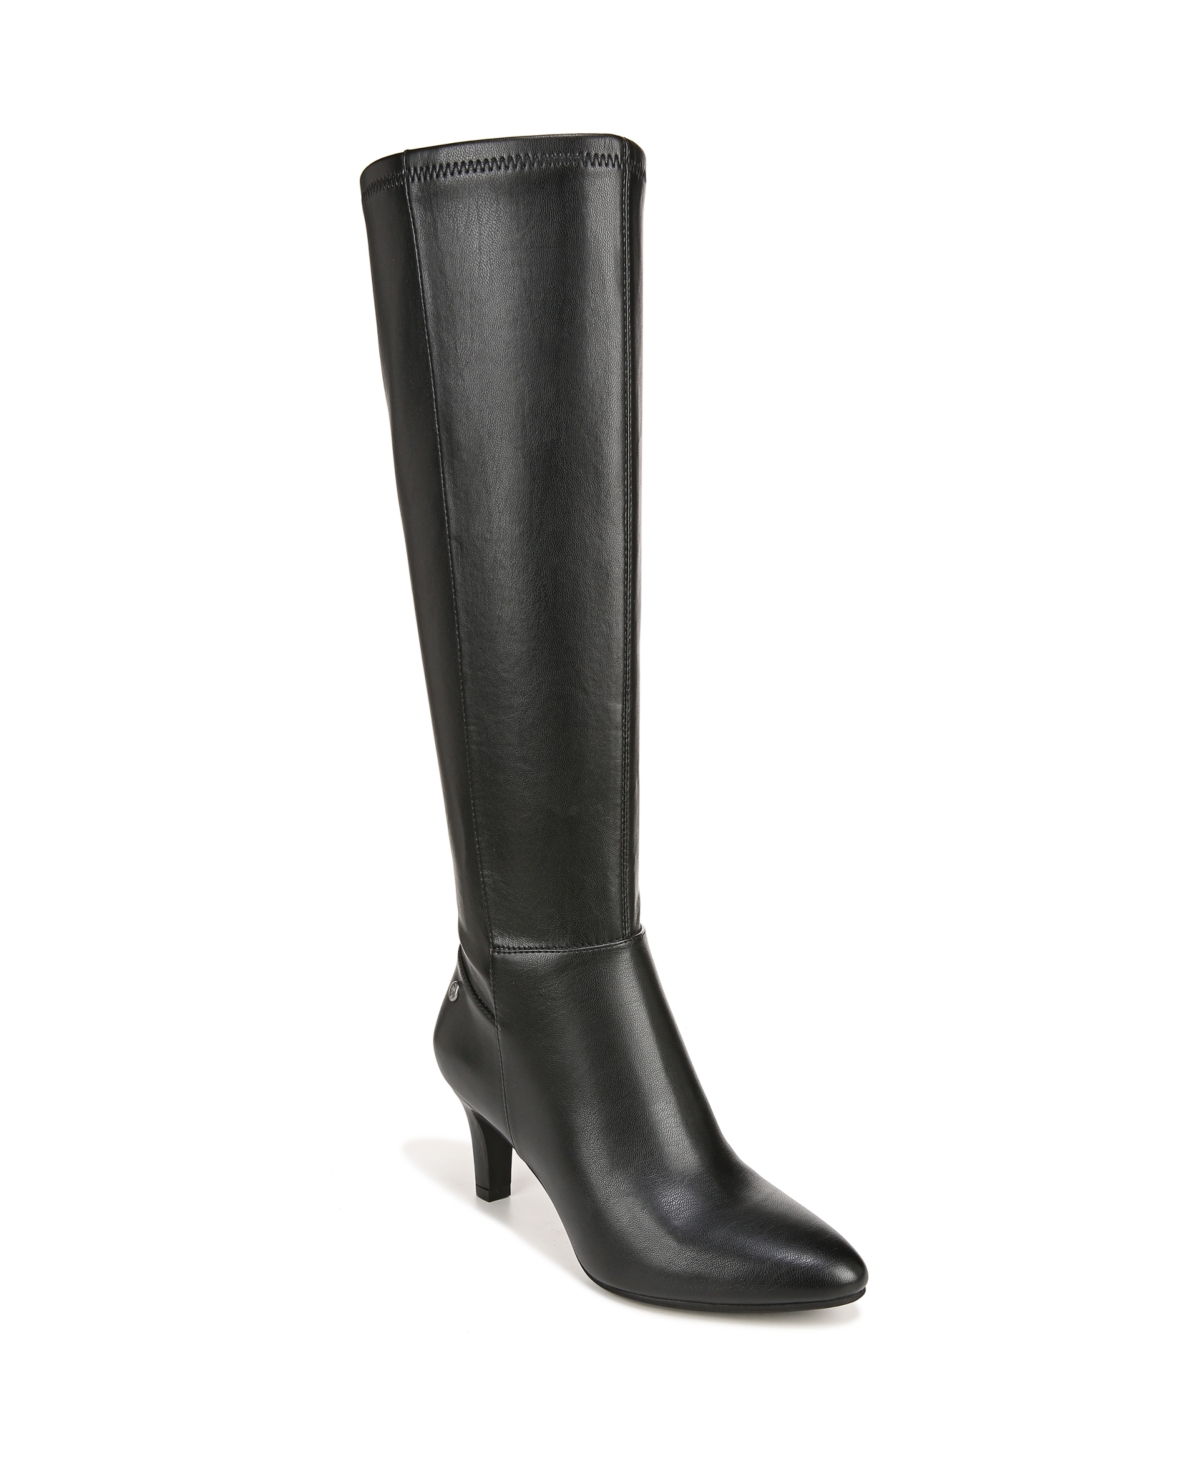 Gracie Dress Boots - Black Faux Leather